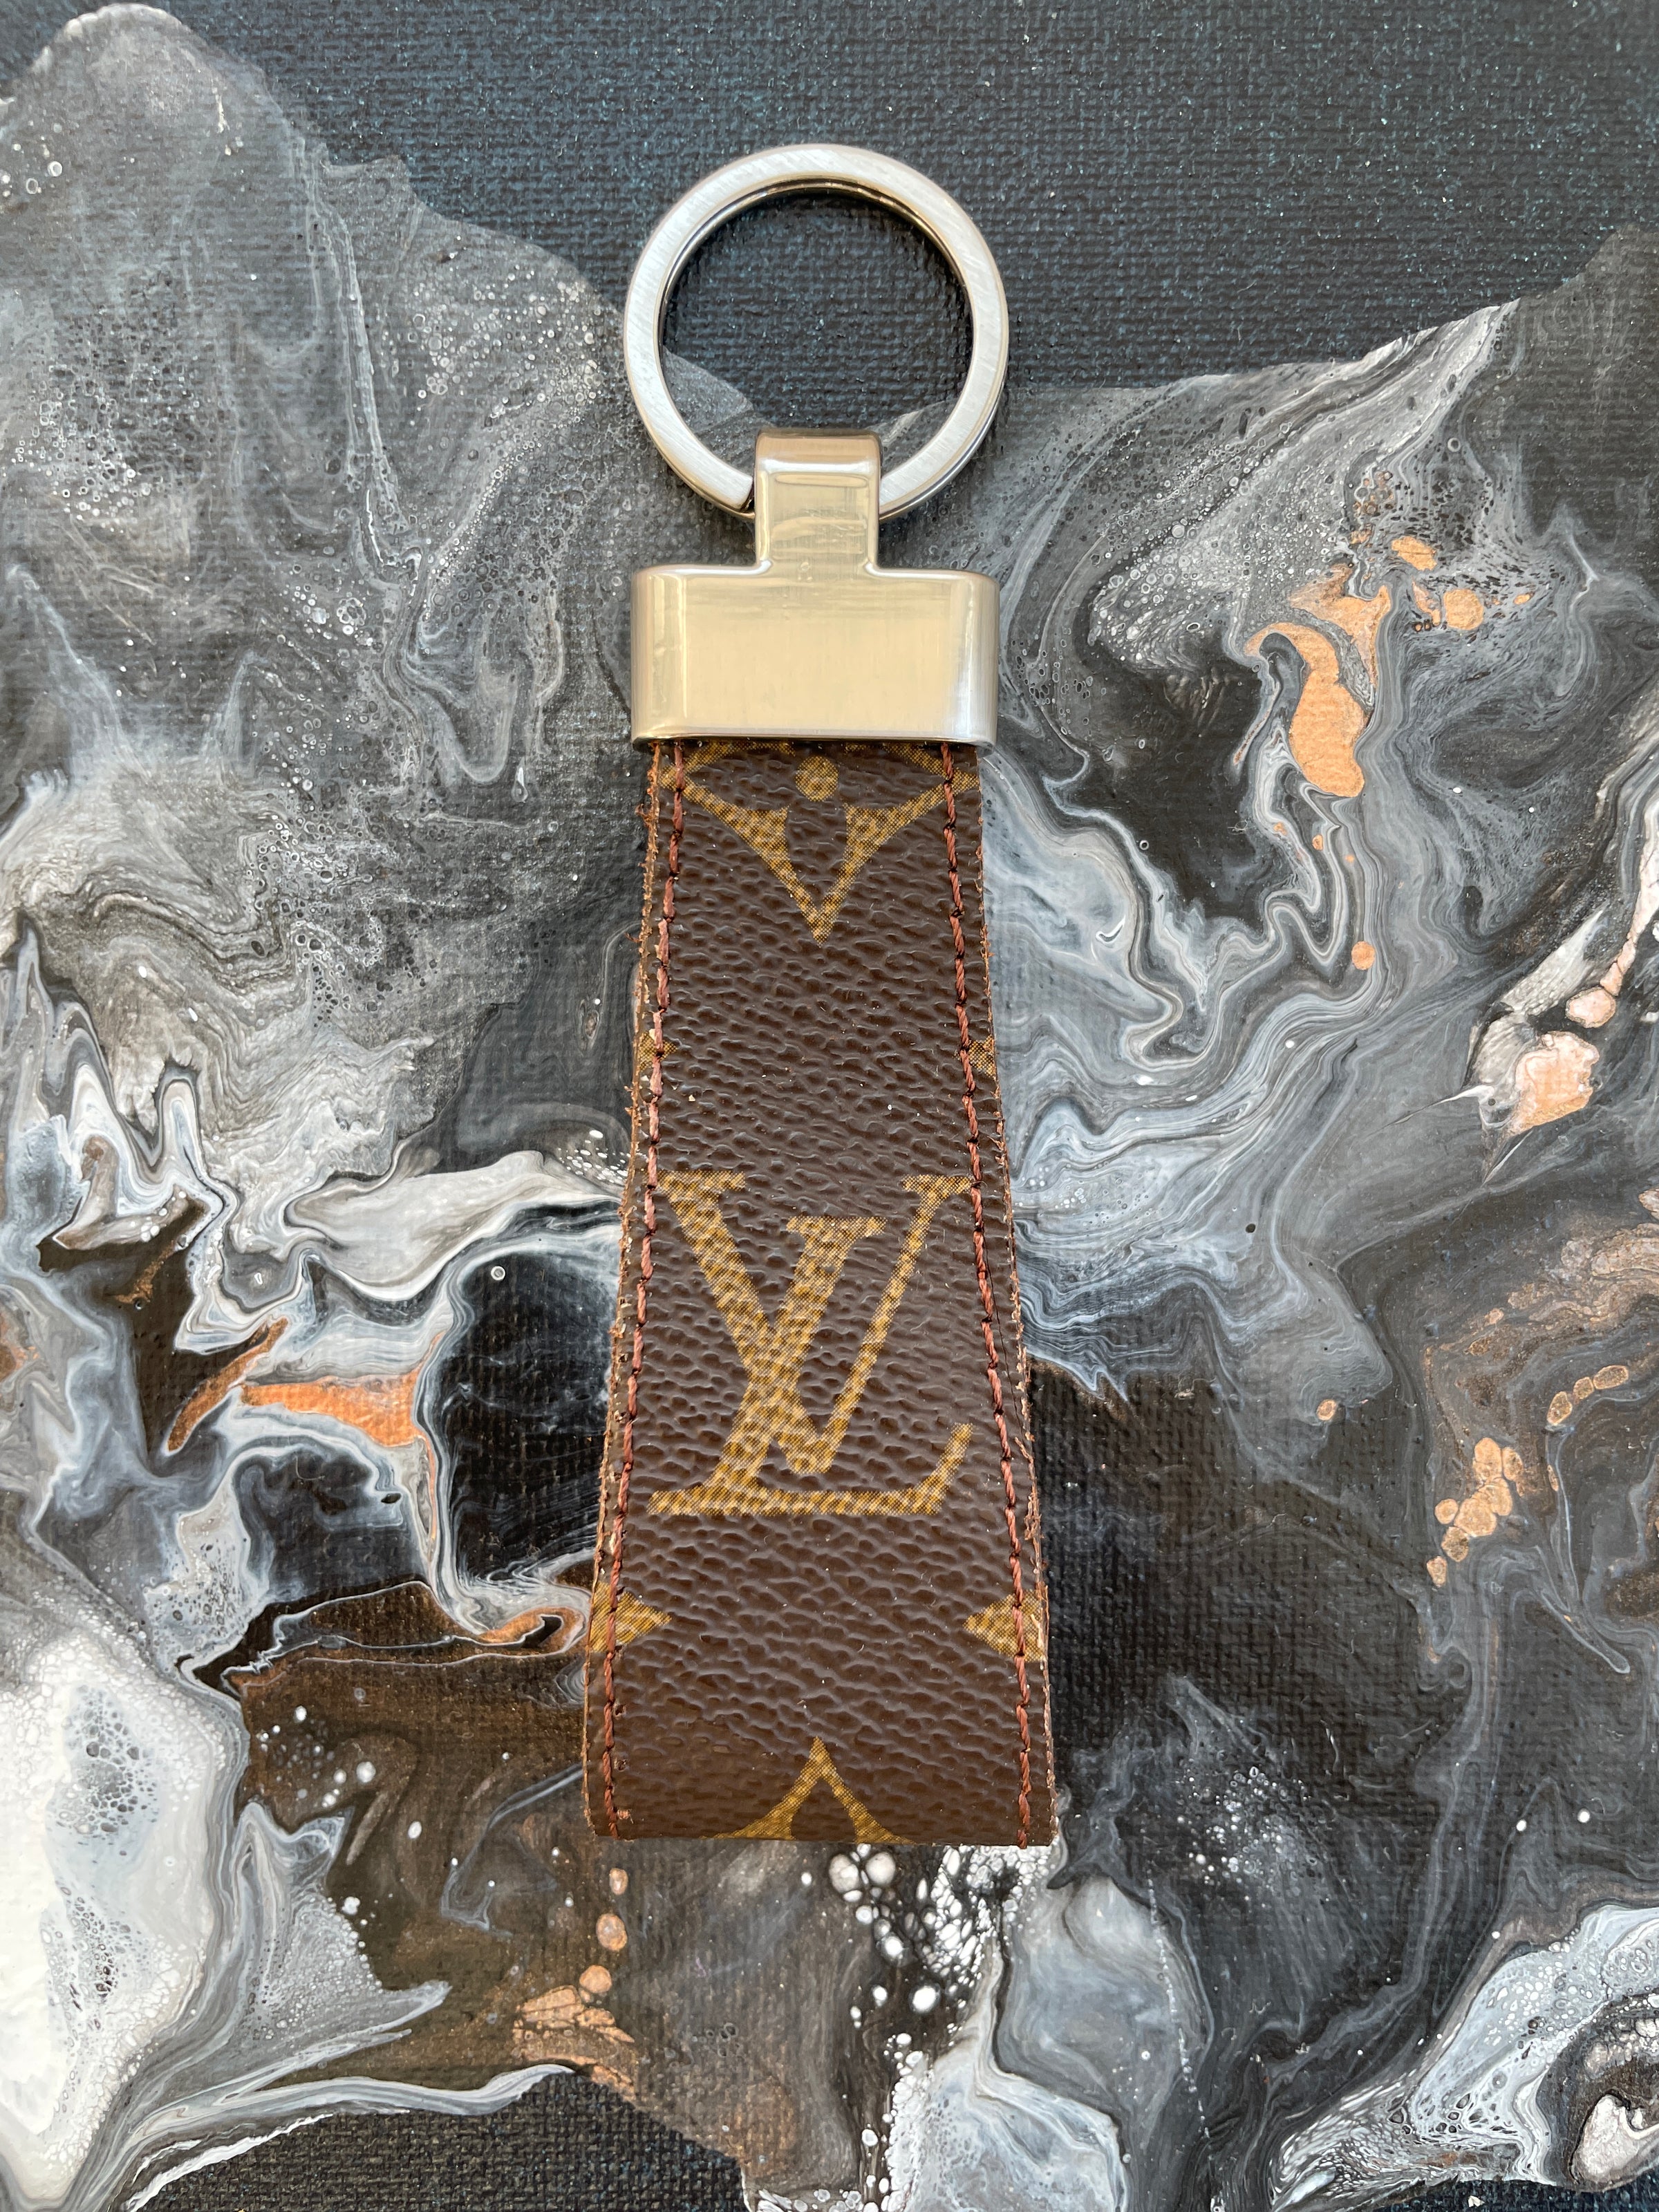 Louis Vuitton Monogram Keychain